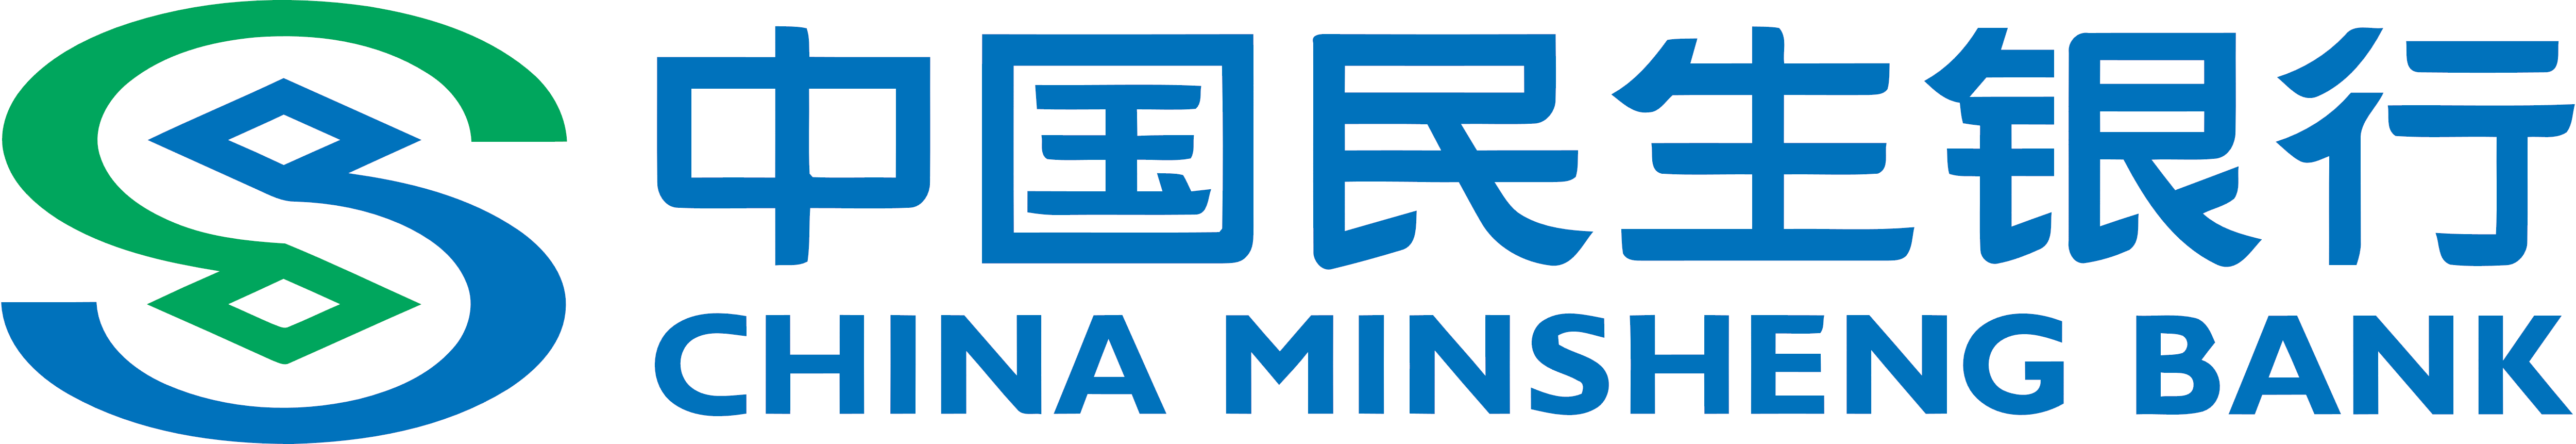 China Minsheng Bank – Logos Download